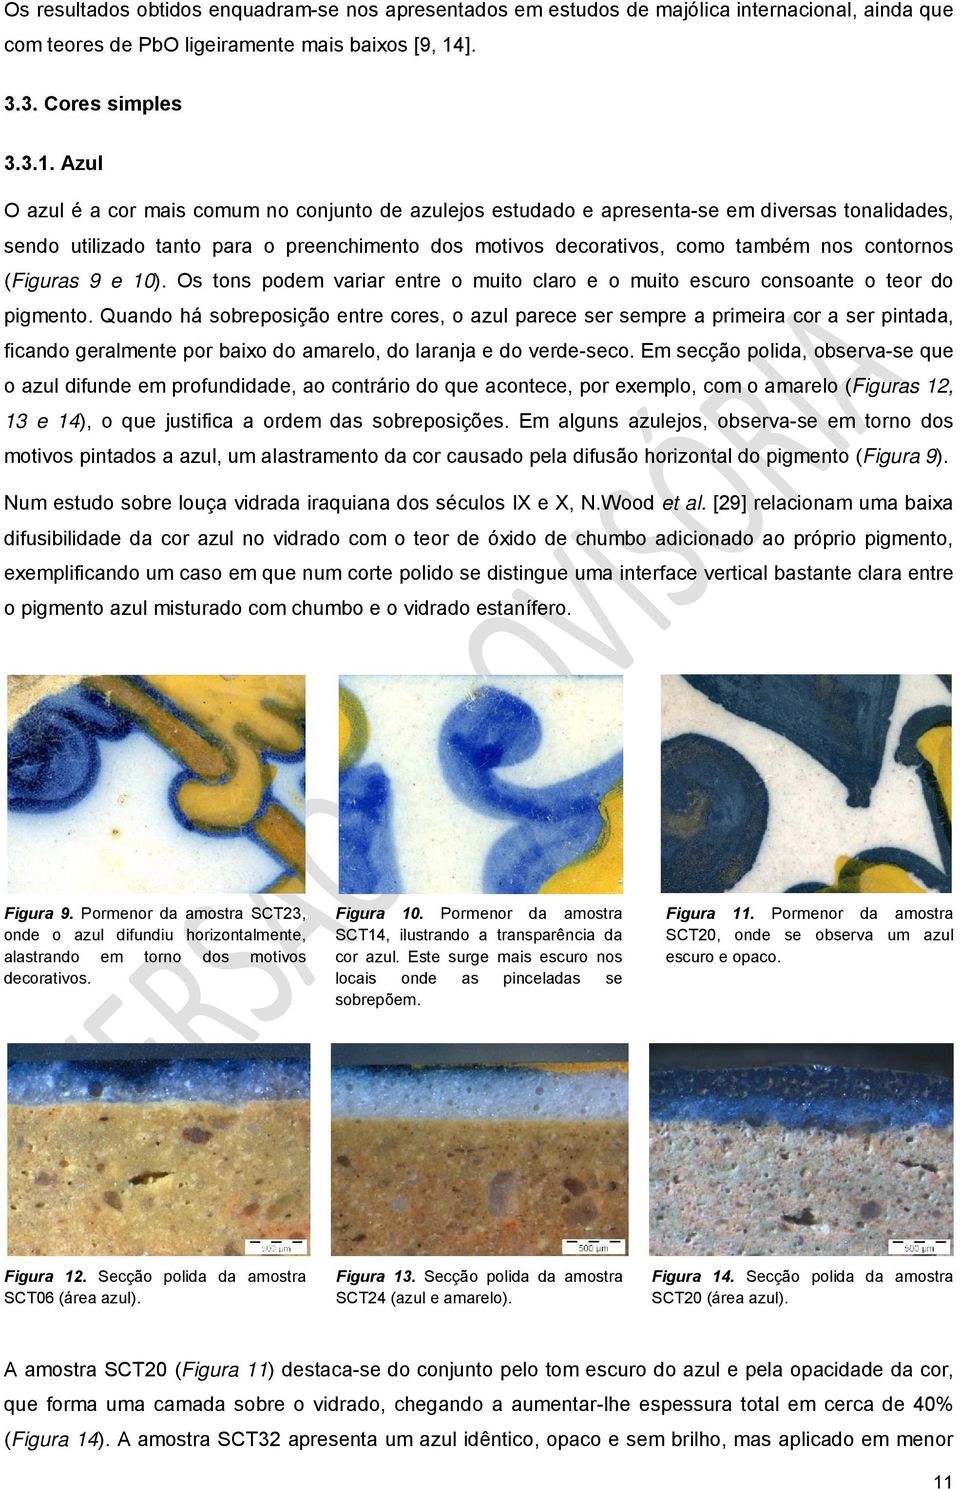 Azul O azul é a cor mais comum no conjunto de azulejos estudado e apresenta-se em diversas tonalidades, sendo utilizado tanto para o preenchimento dos motivos decorativos, como também nos contornos